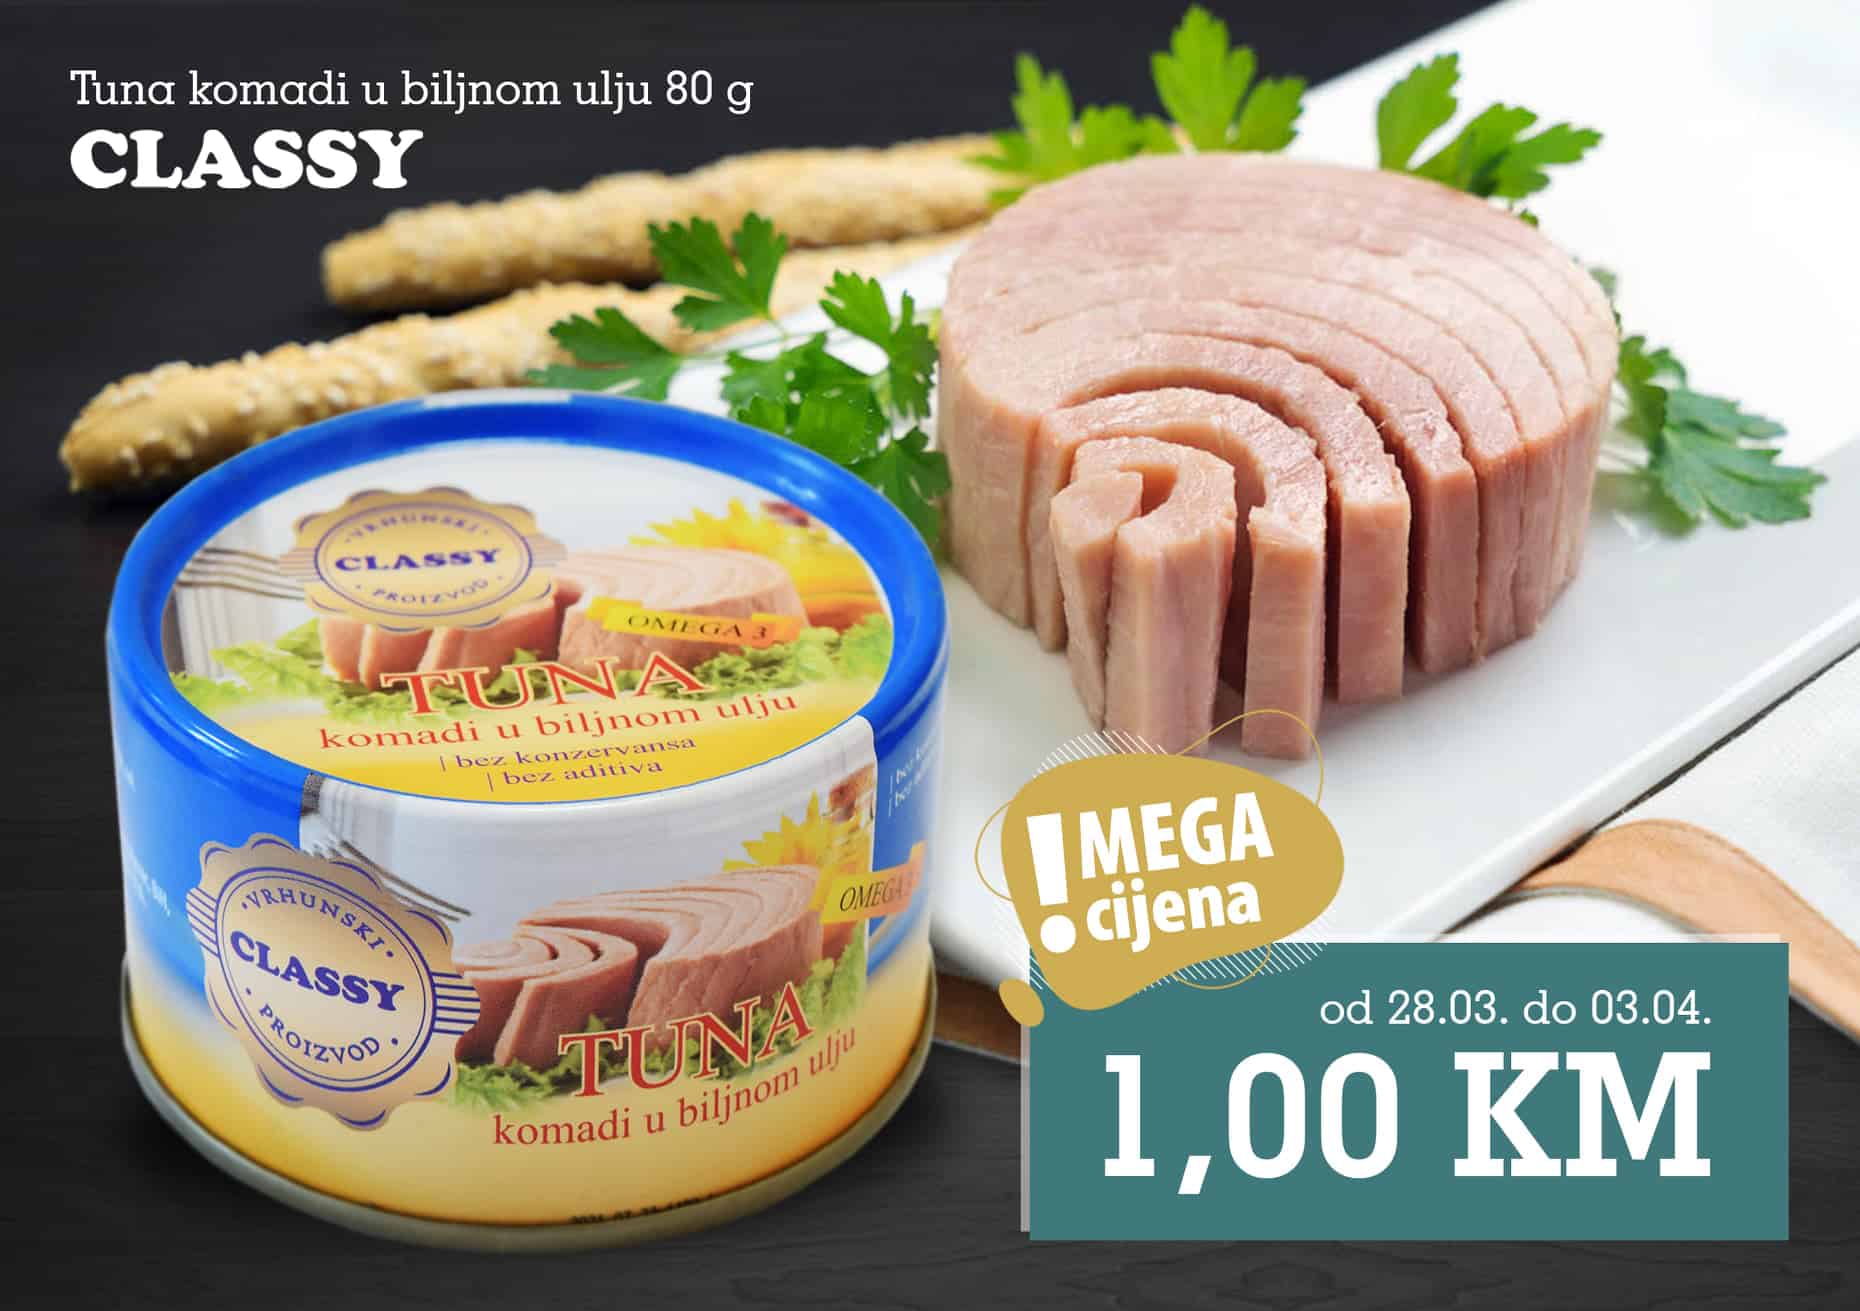 Tuna je odličan izvor proteina i omega 3 masnih kiselina ️😇 Može se pripremati na razne načine, a mnogi je najčešće jedu kao dio salate i tjestenine s tunjevinom ili pak pripremaju sočne odreske od tune.